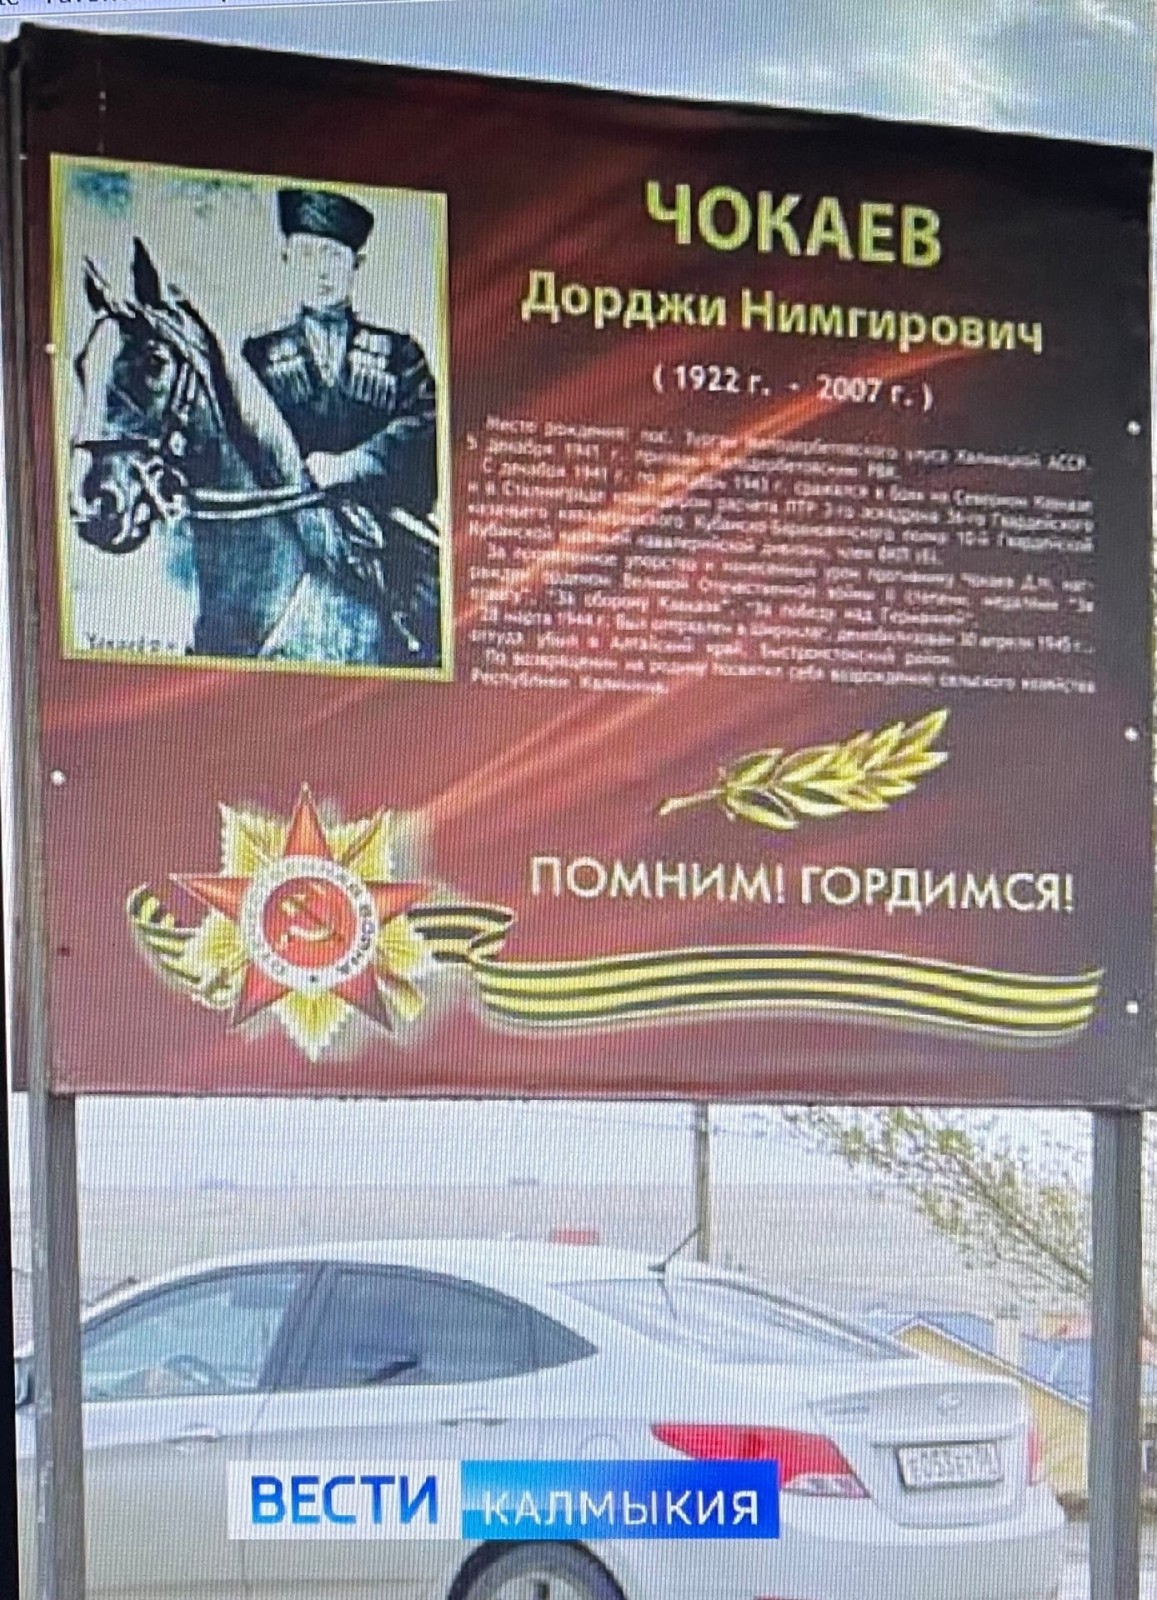 В Элисте официально открыли улицу имени Дорджи Чокаева – ветерана Великой Отечественной войны